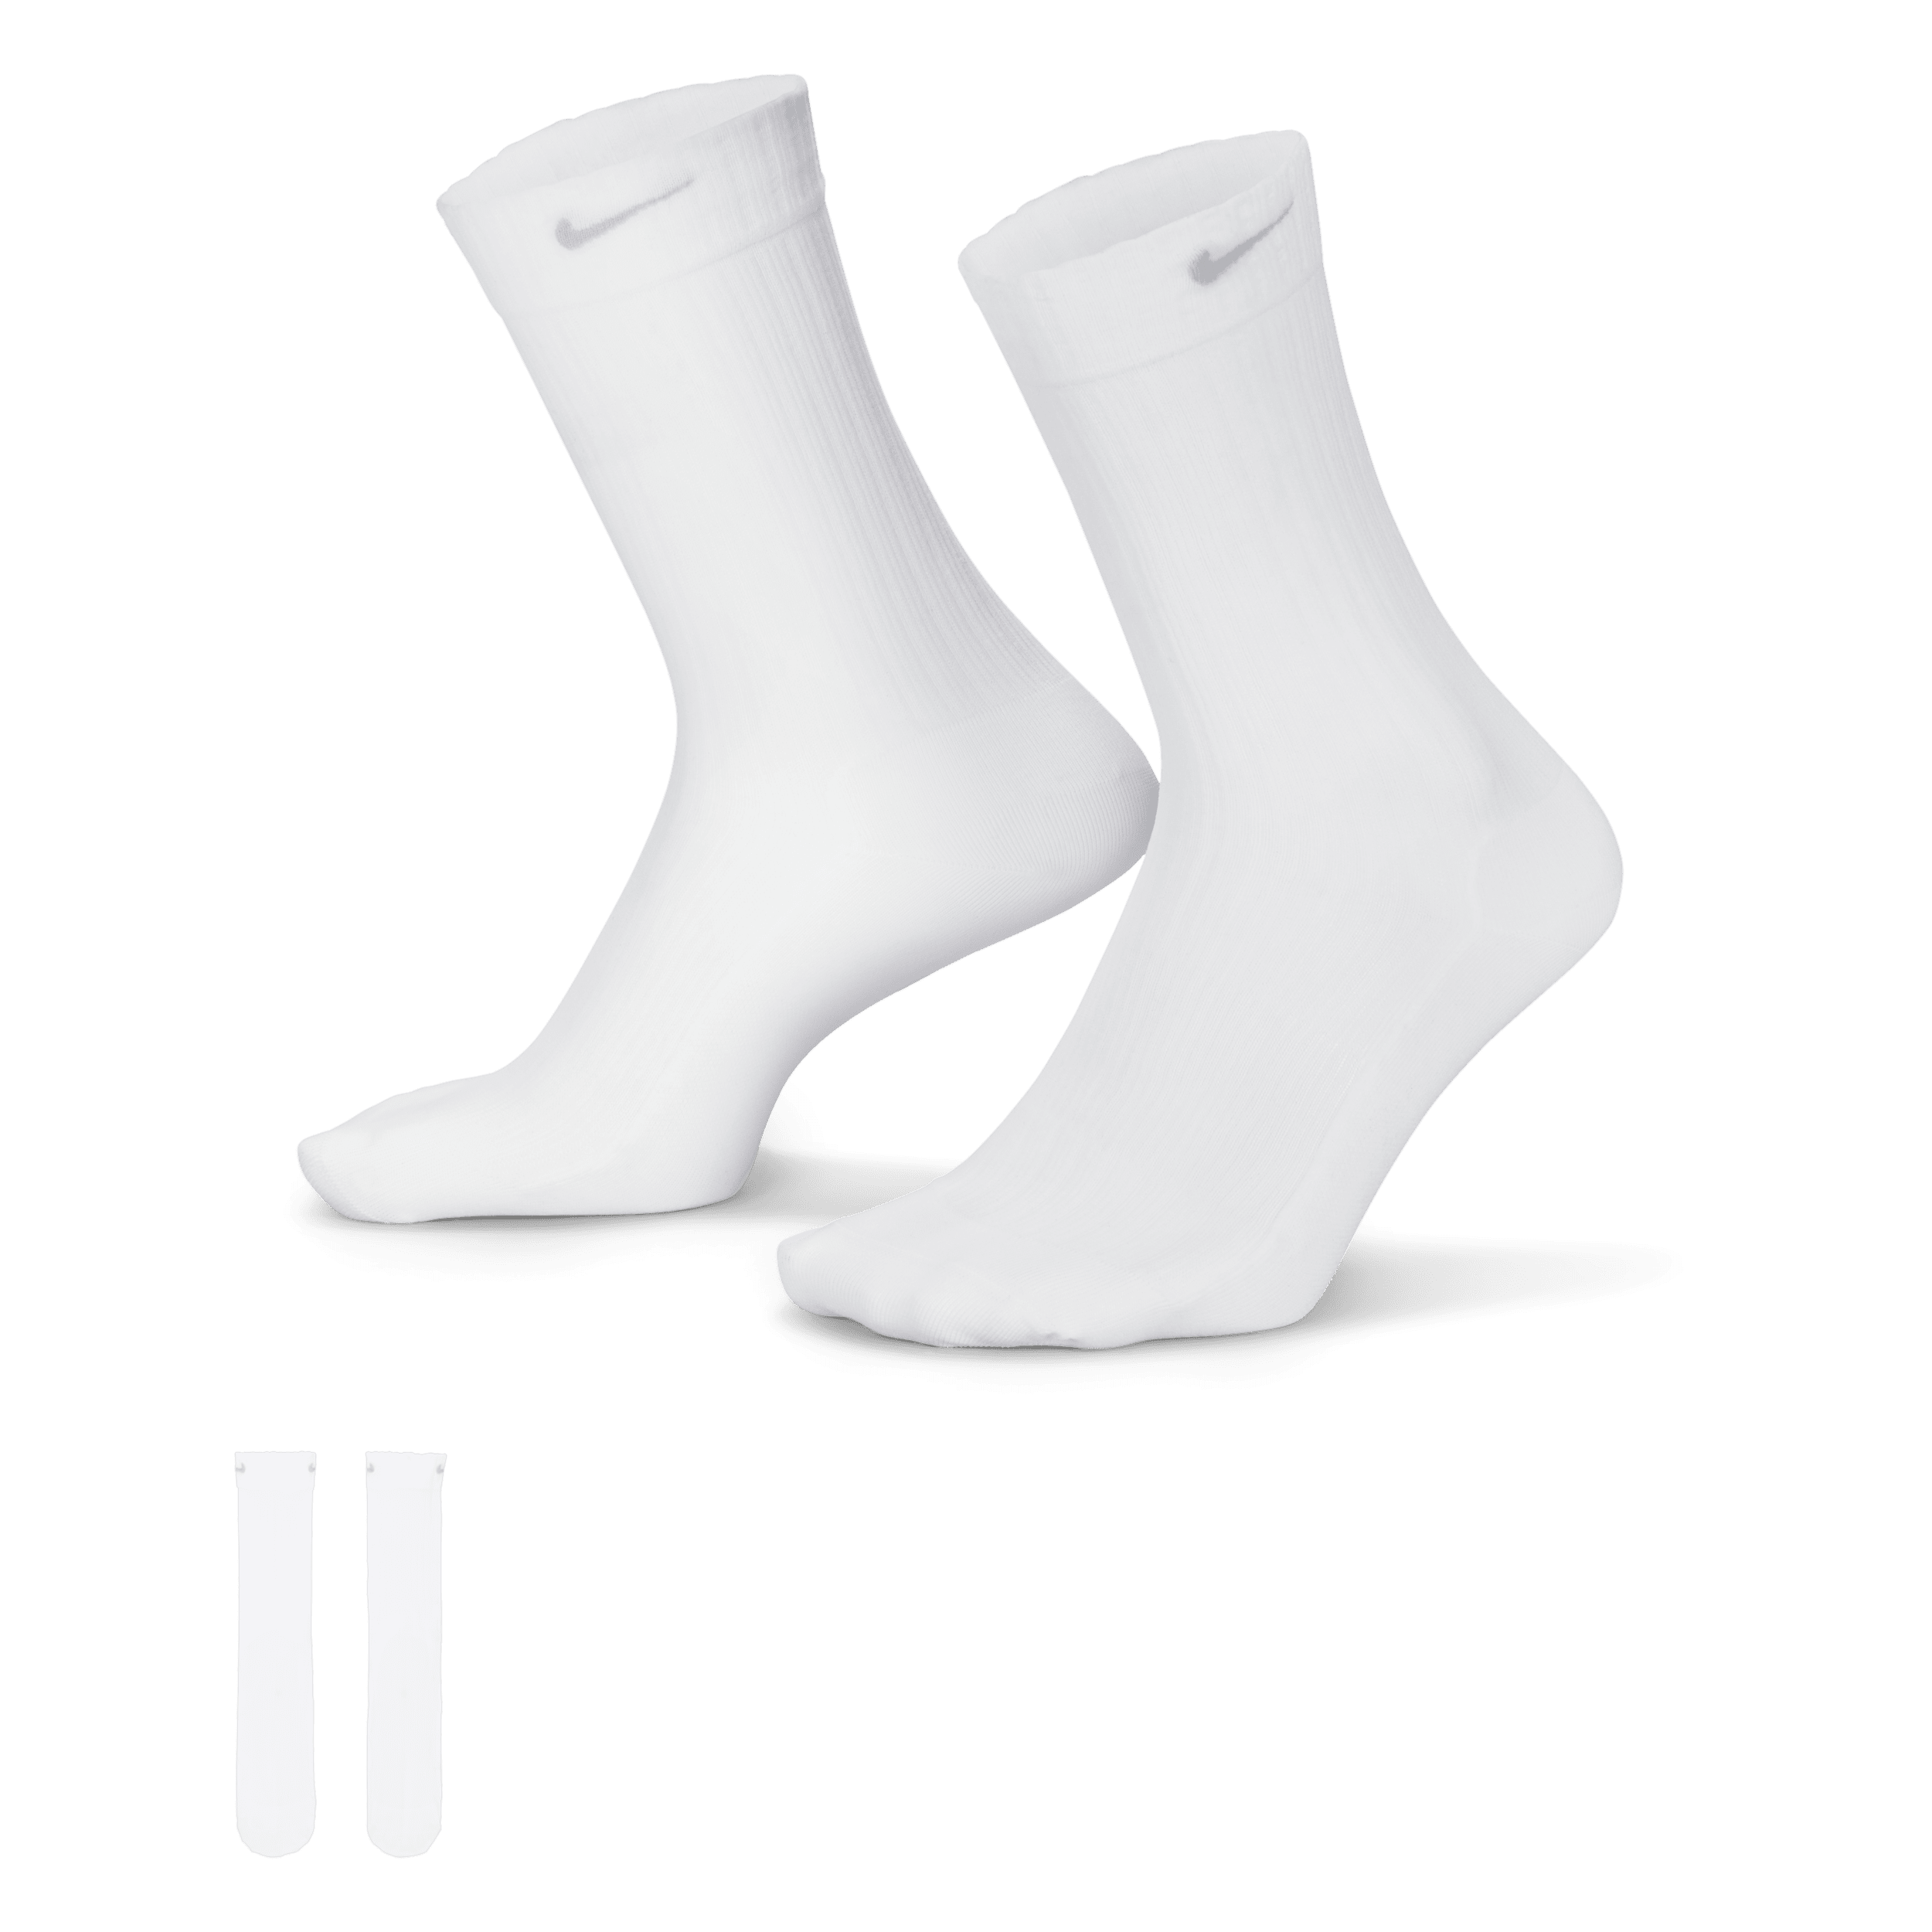 Calze velate di media lunghezza Nike – Donna (1 paio) - Bianco